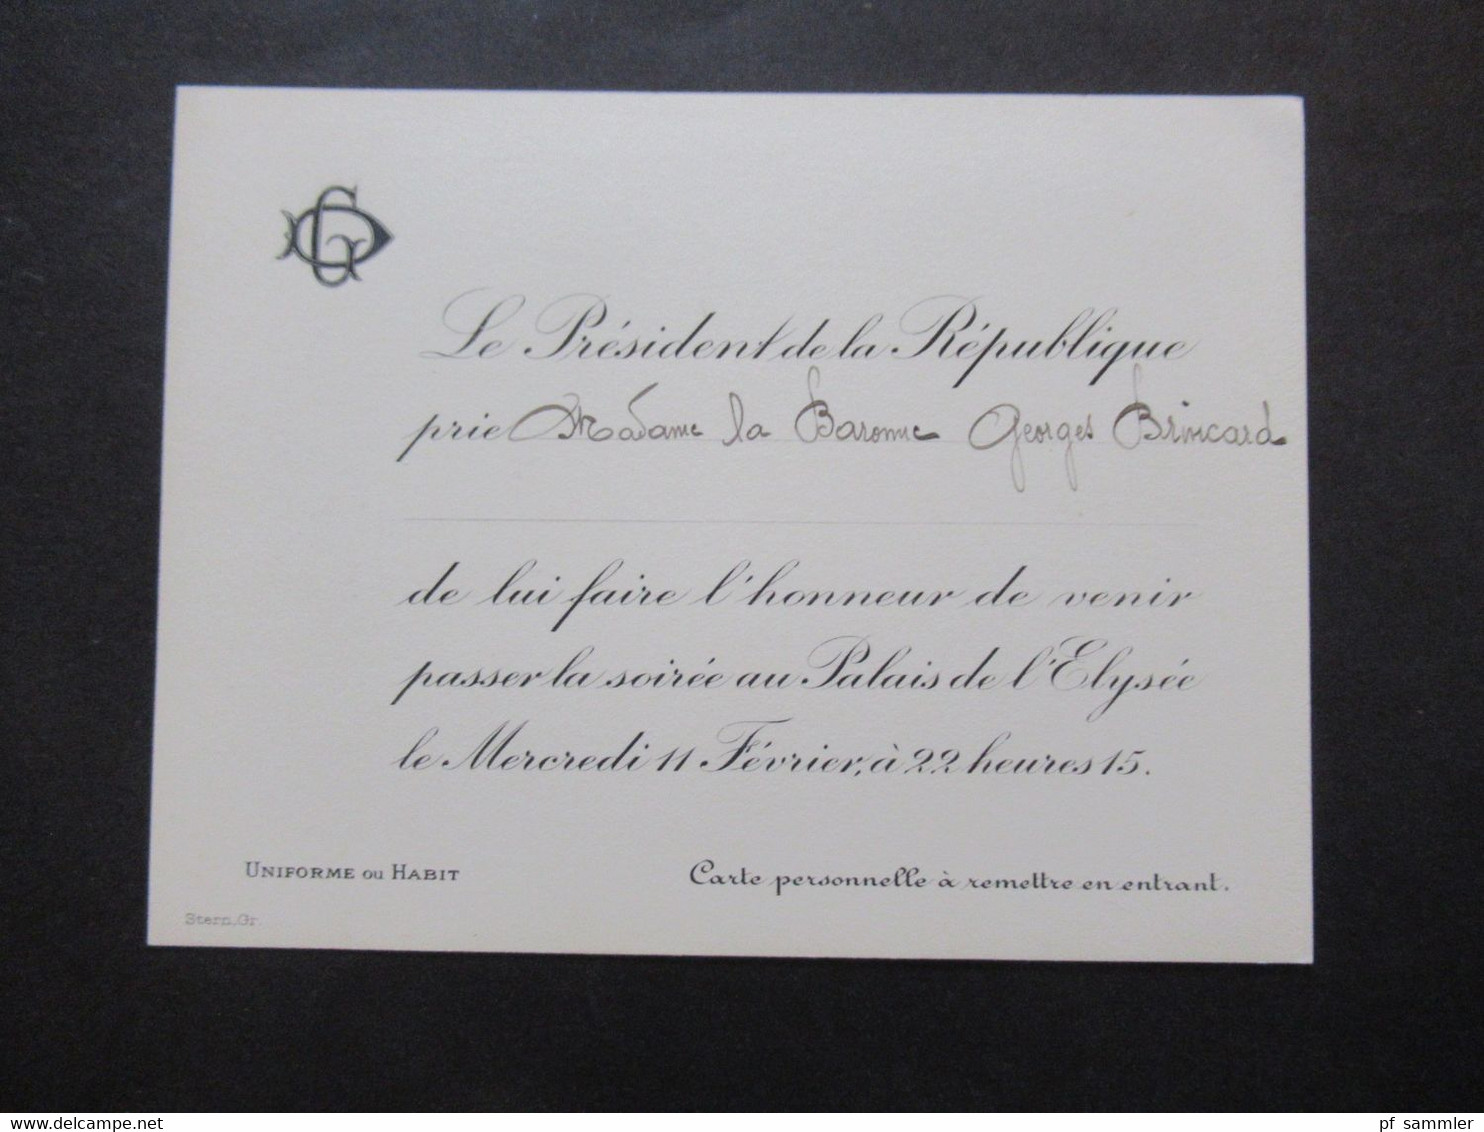 Frankreich 1920er Jahre 2x Originale Einladungskarte Von Gaston Doumergue Le President De La Republique Zur Soirée - Biglietti D'ingresso